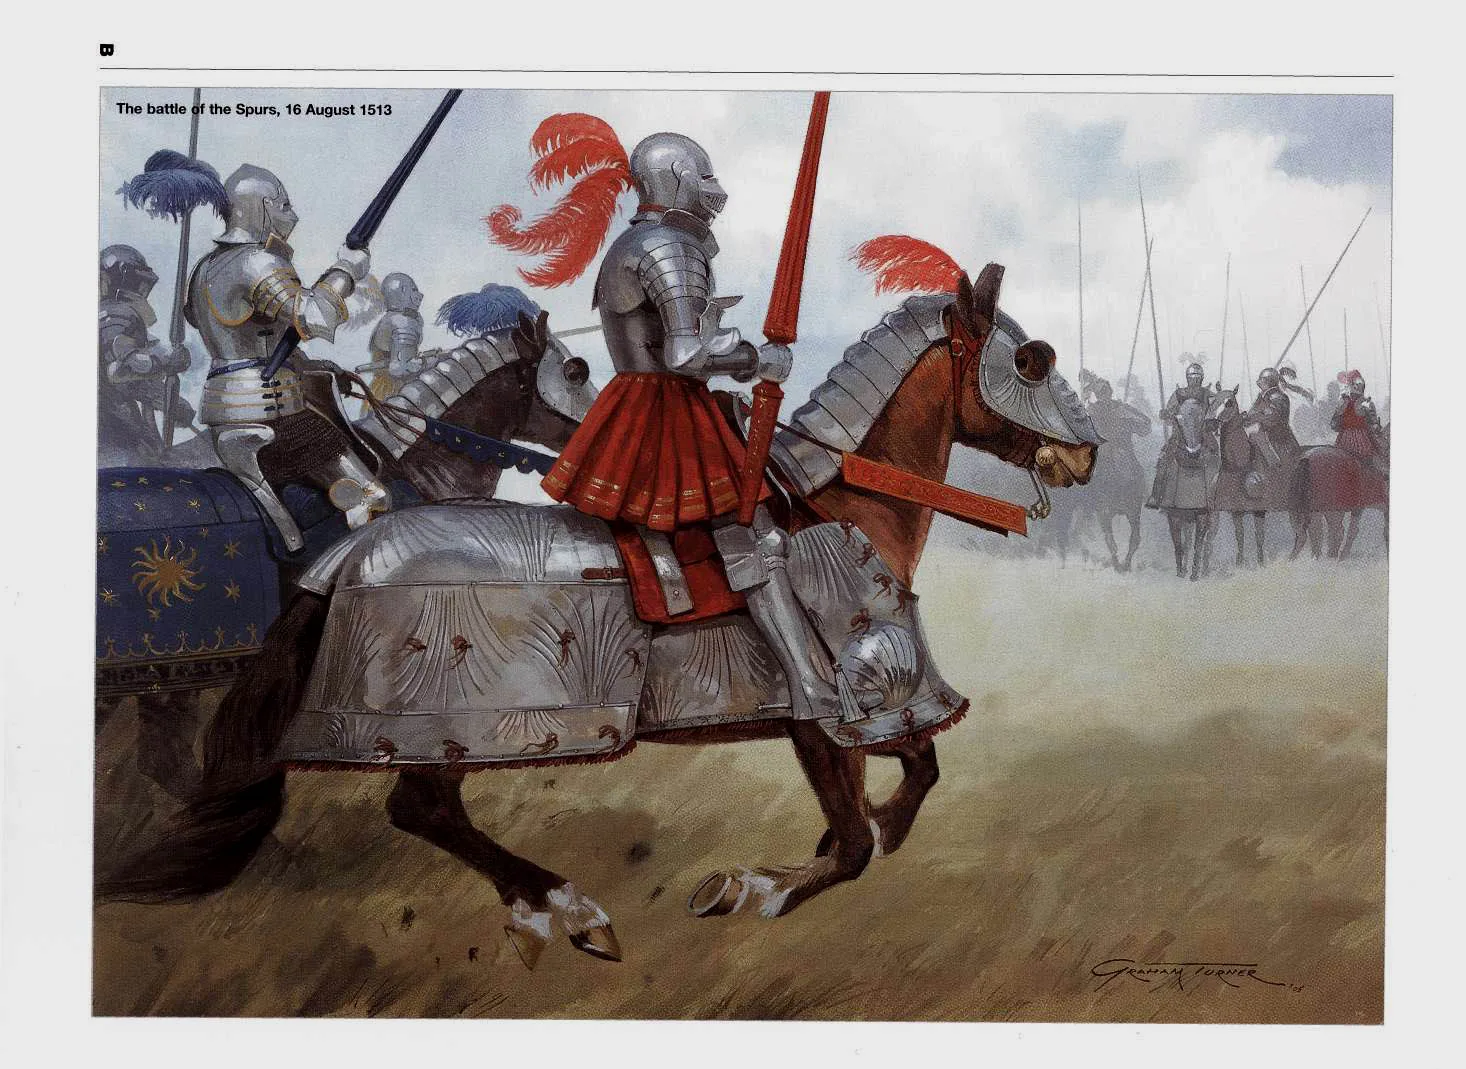 马刺之战中，英国骑士向法国骑士发起进攻